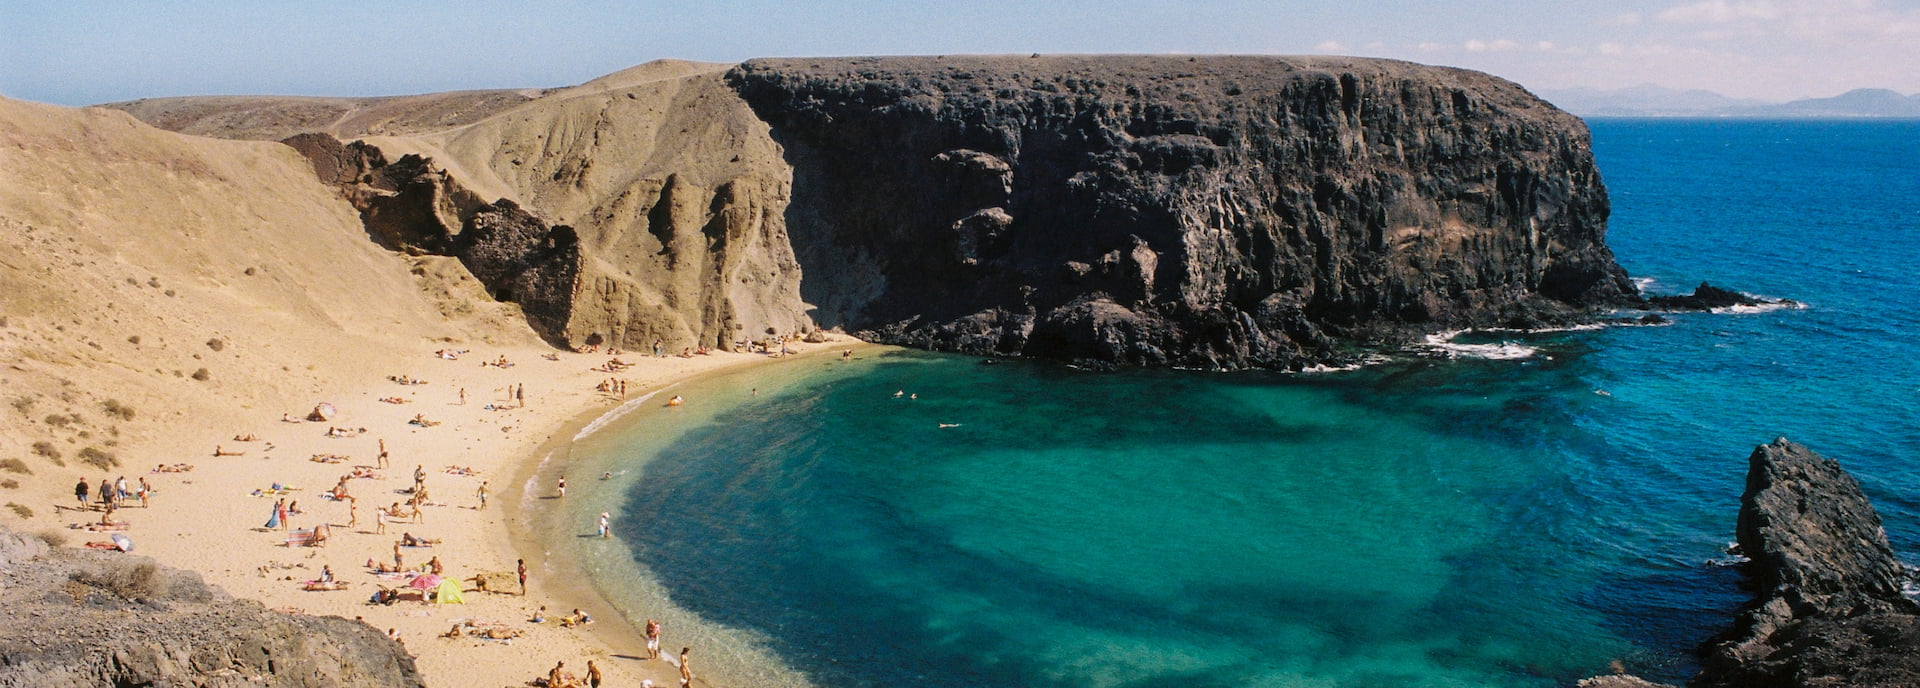 Descubre La Hermosa Playas De Papagayo Lanzarote Com